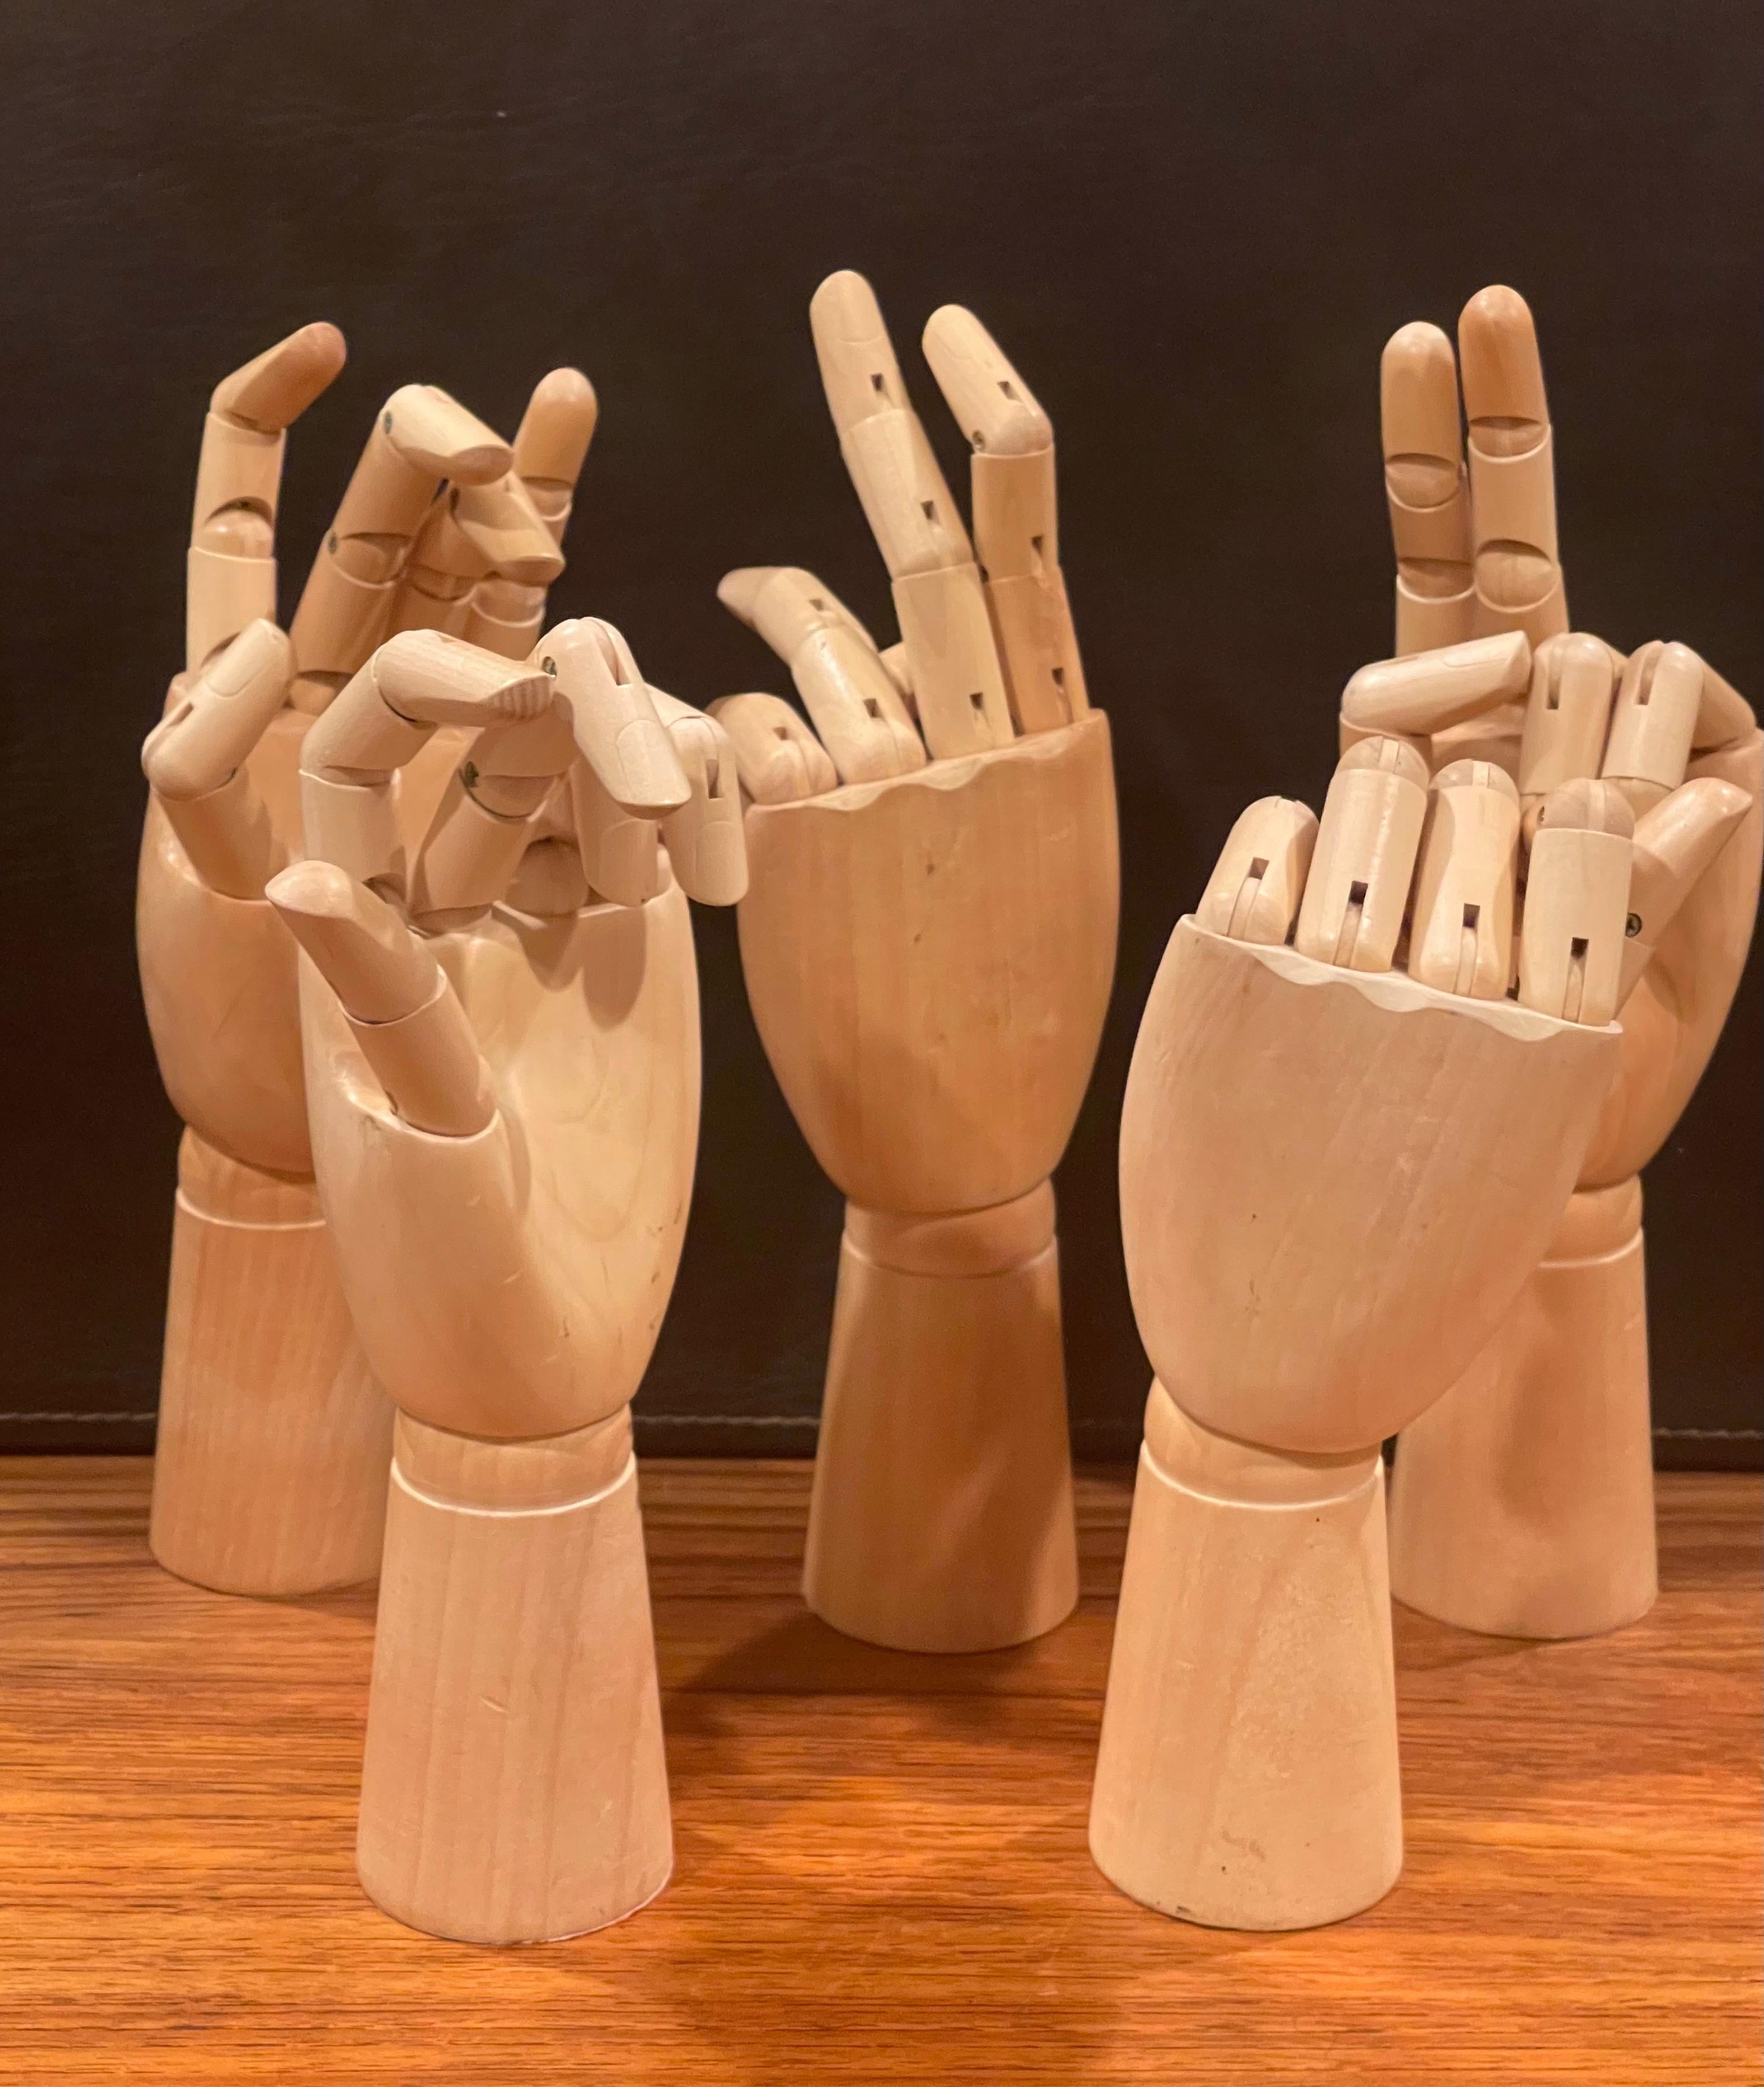 Einzigartiger Satz von fünf beweglichen Händen, ca. 1990er Jahre. Die Hände sind sehr gut aus massivem Ahornholz gefertigt und verfügen über eine Reihe von Gelenkverbindungen, die es ermöglichen, die Hände in unendlich viele Positionen zu bringen.